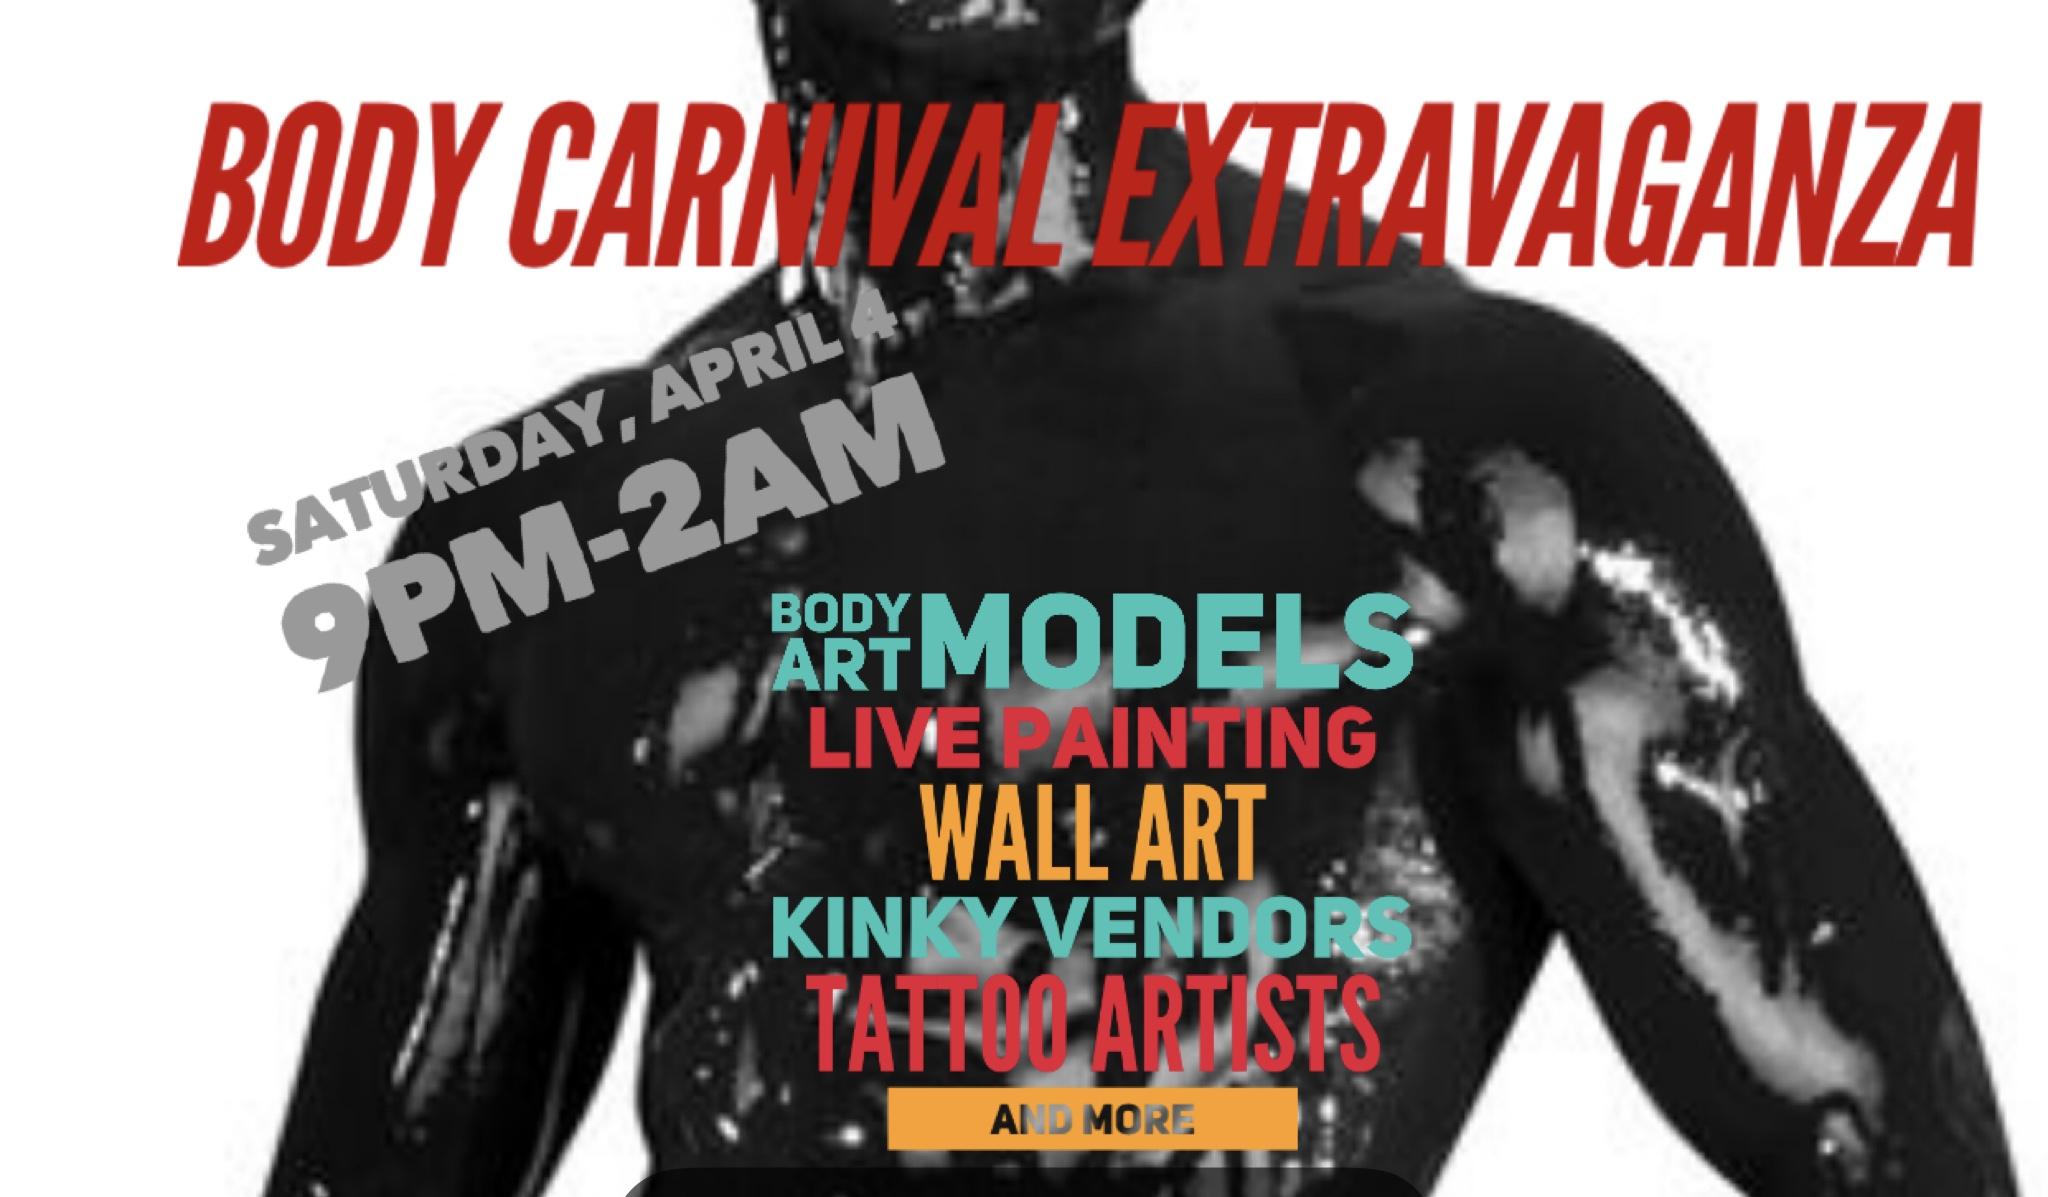 Body Carnival Extravaganza